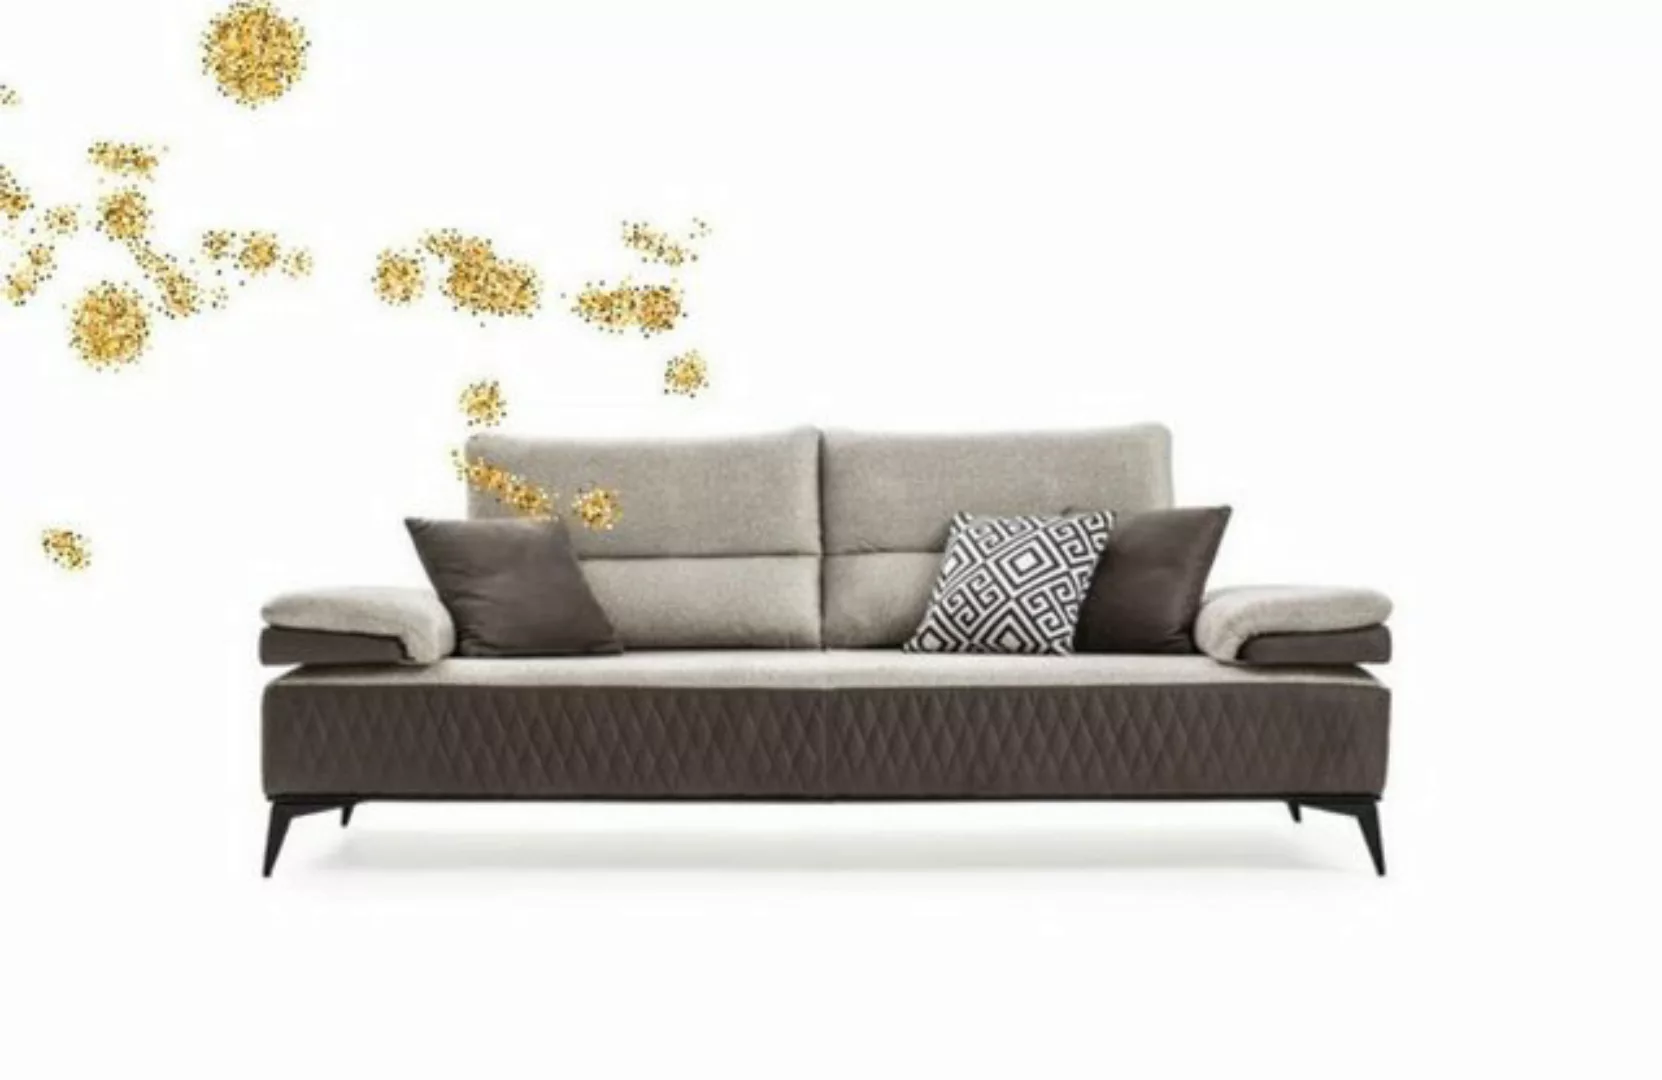 JVmoebel 3-Sitzer Dreisitzer Moderne Couch Möbel Grau Couchen Klassische So günstig online kaufen